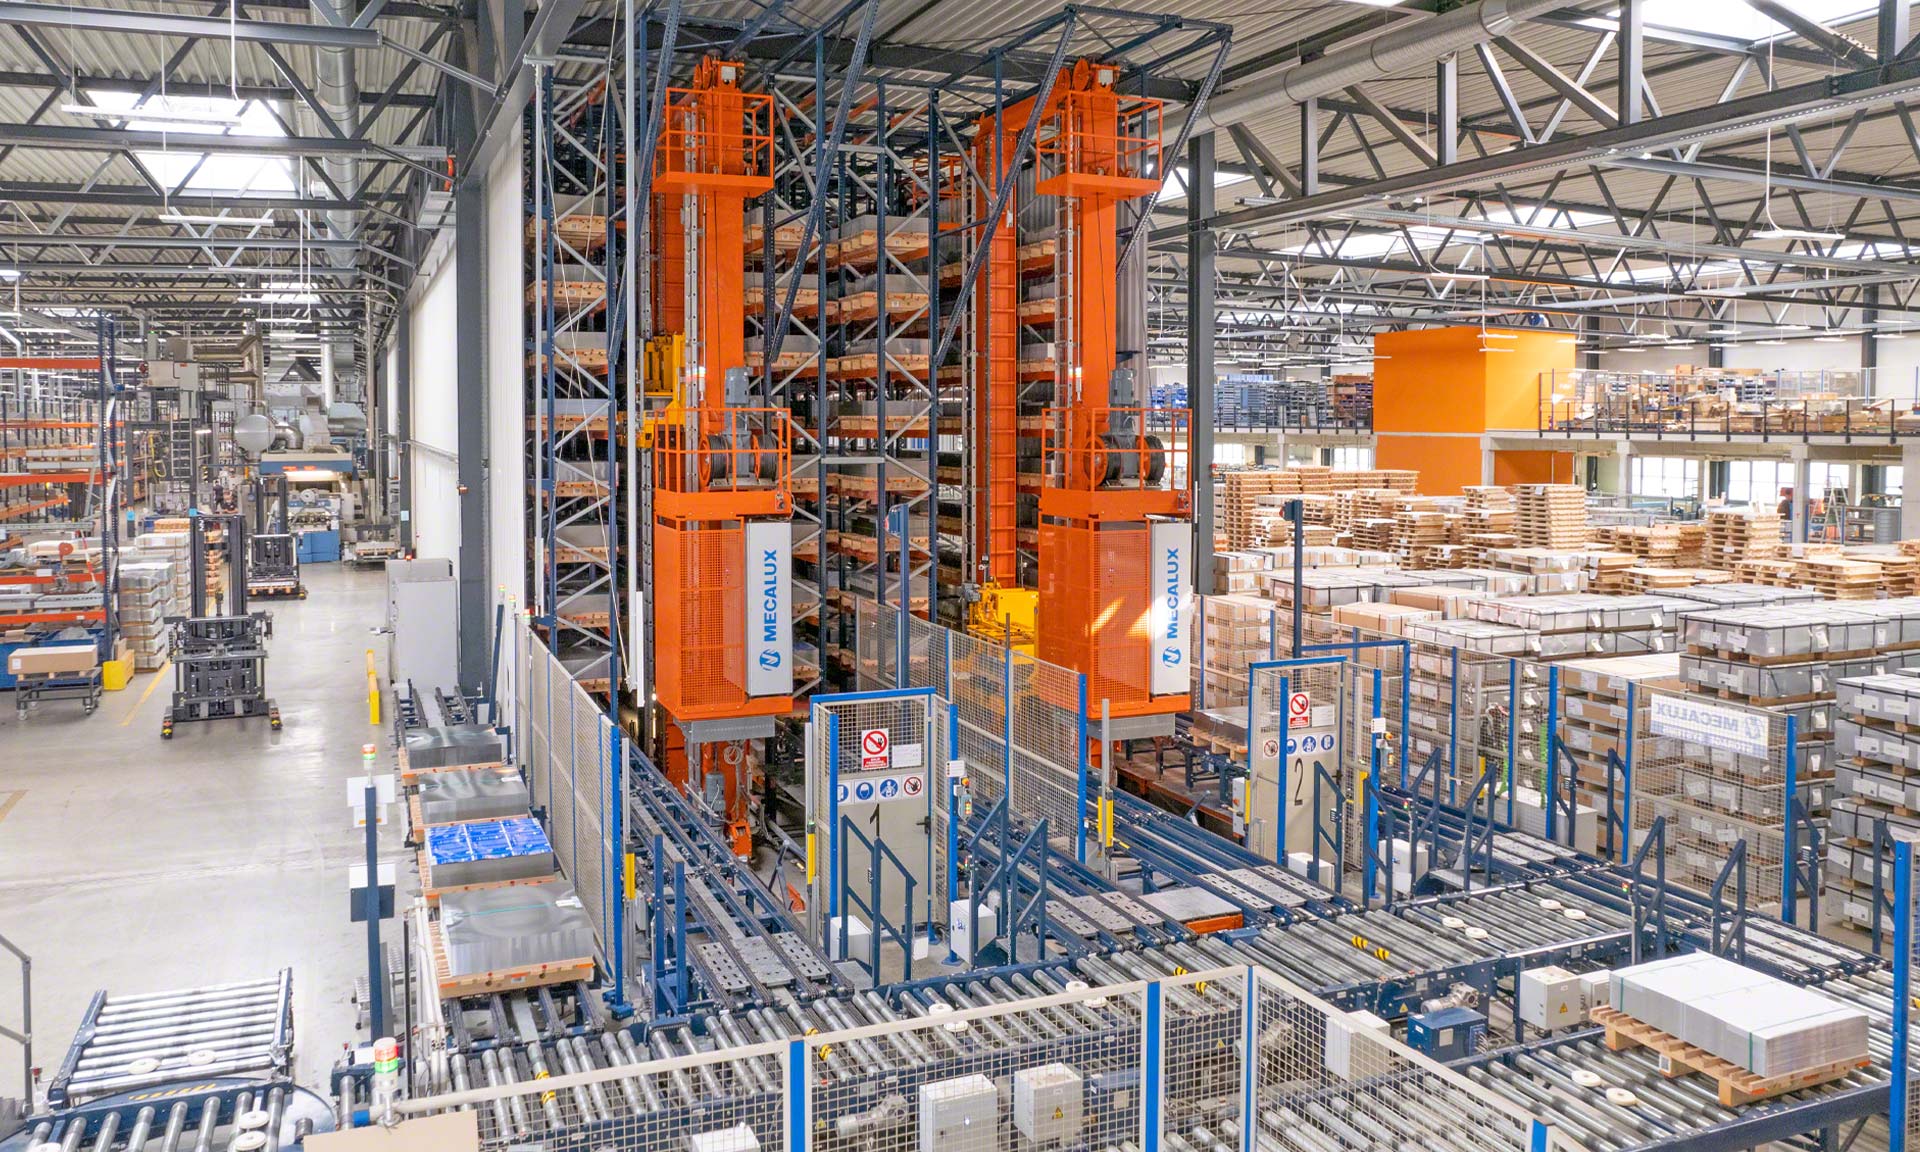 Blechwarenfabrik: a fábrica de embalagens metálicas mais moderna da Europa